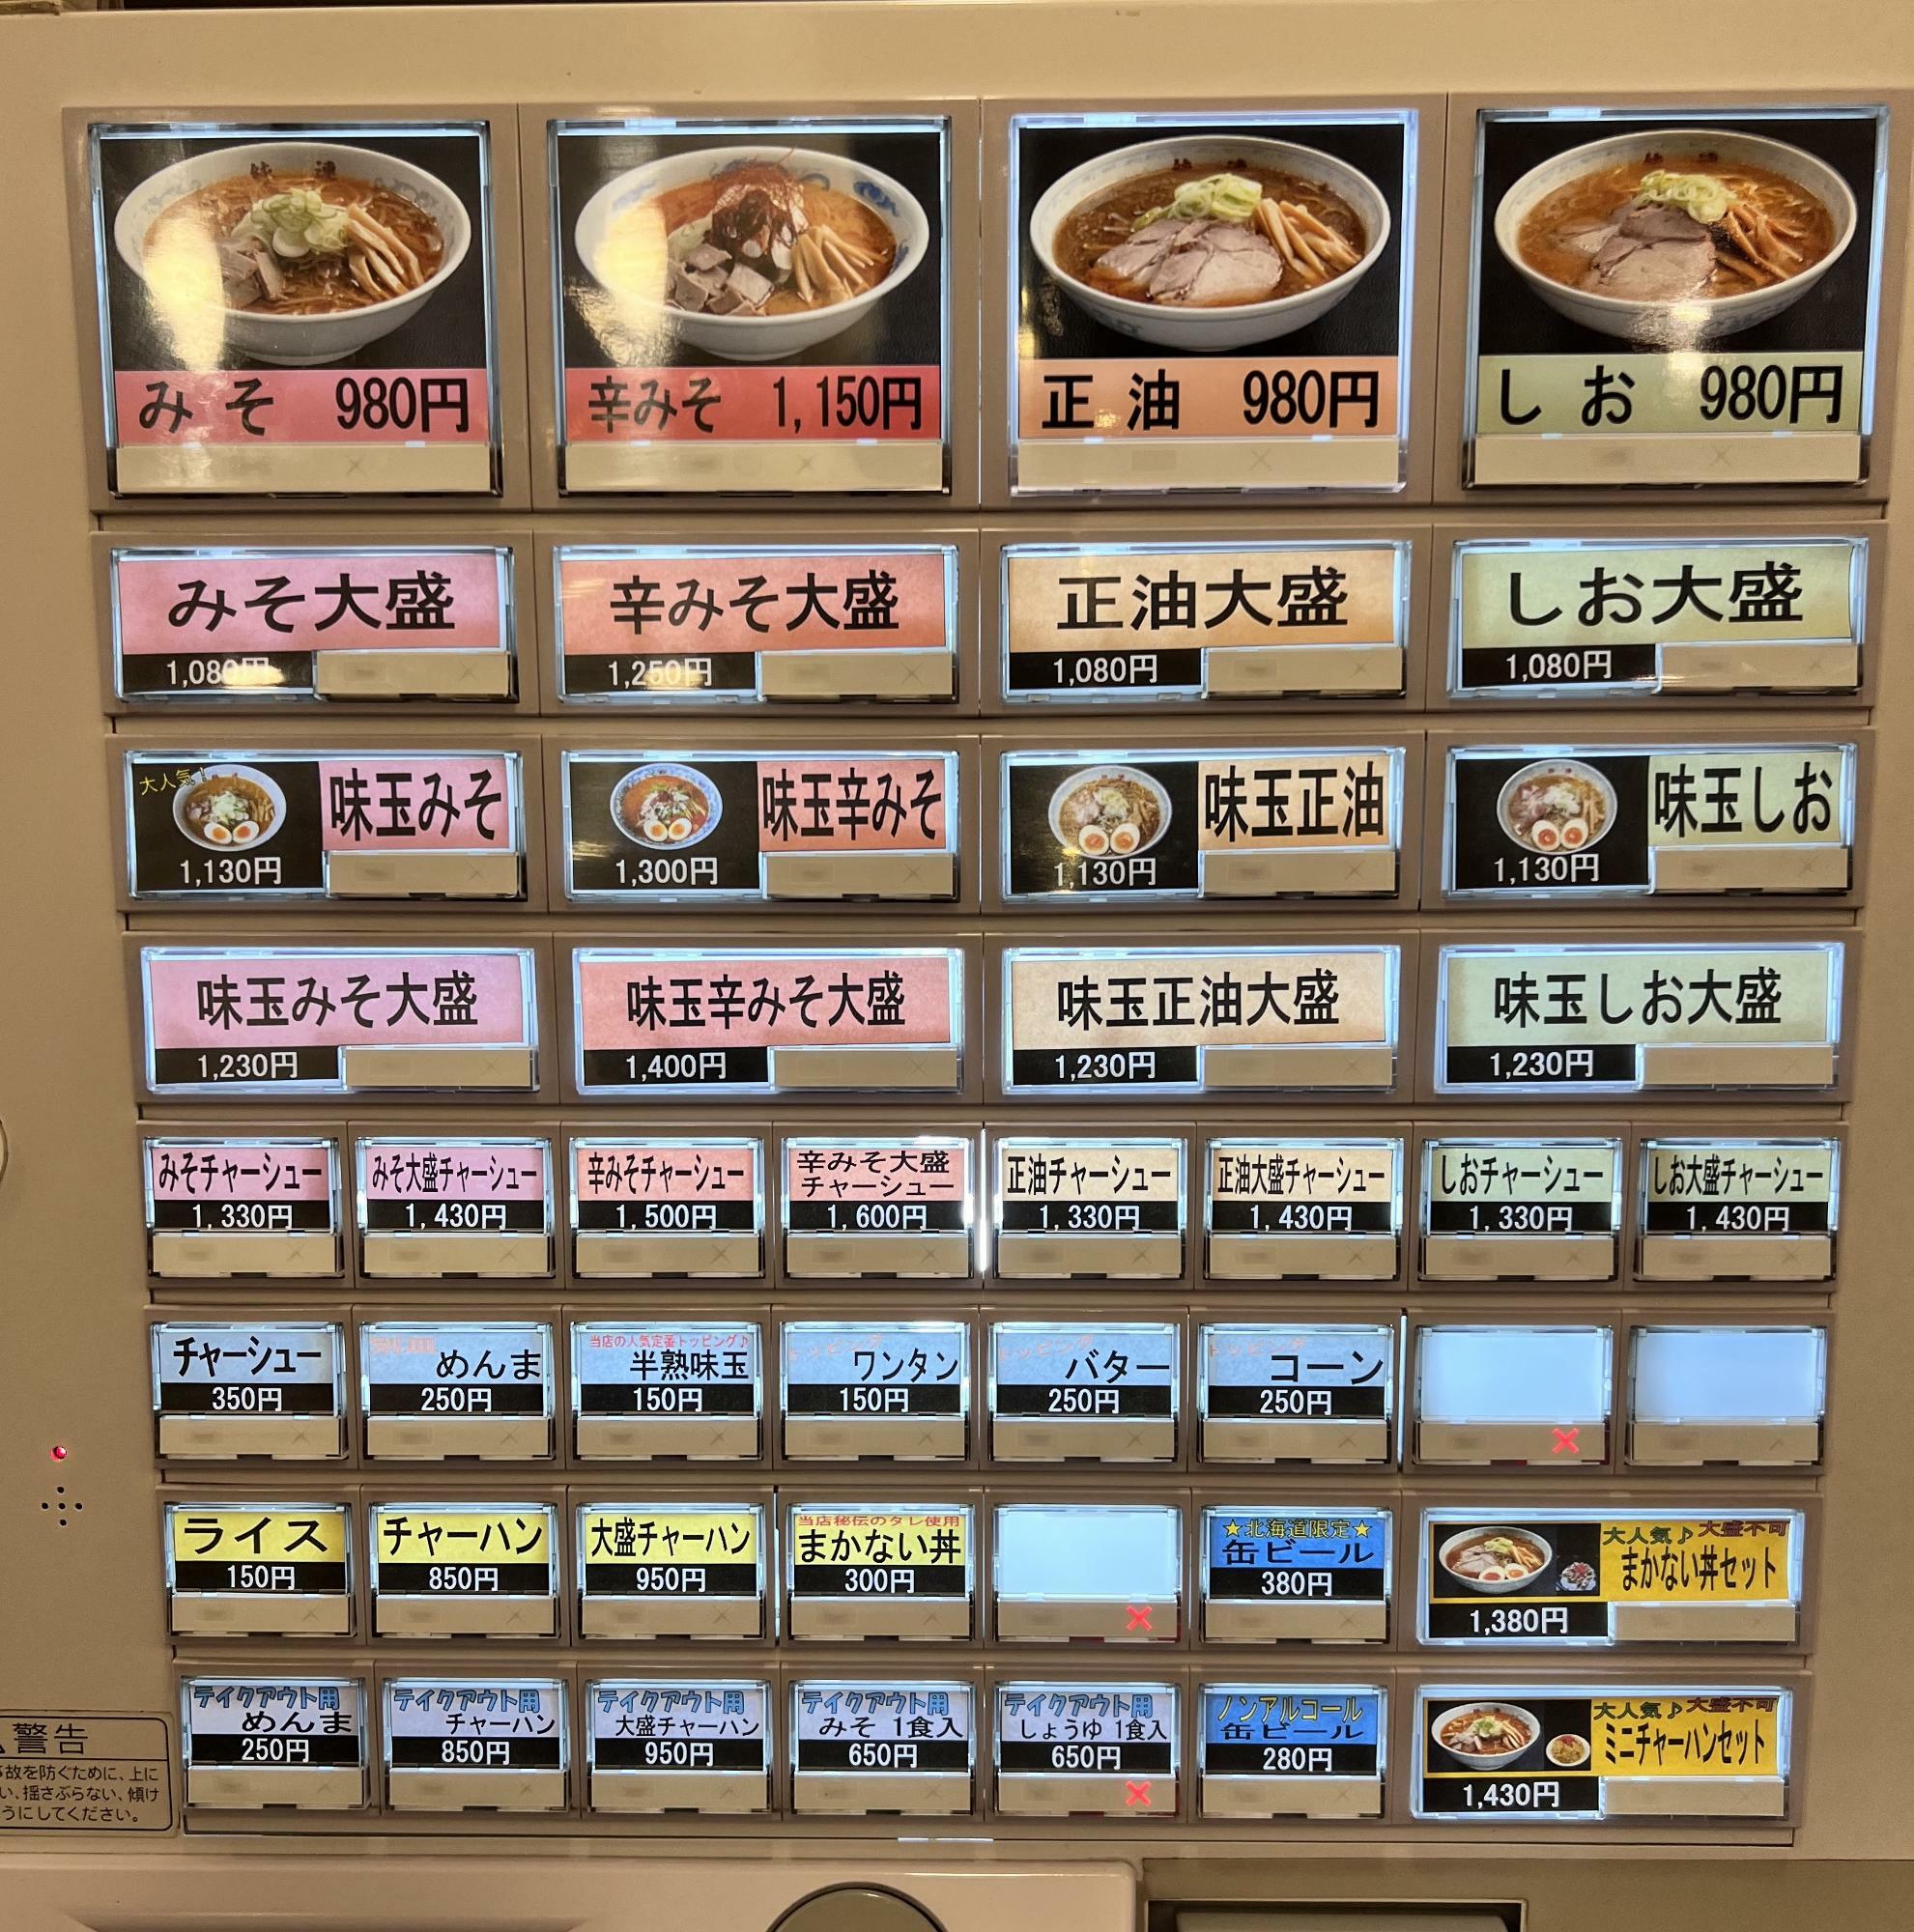 札幌味噌ラーメンでは地元の人は『バター』や『コーン』はあまり入れないとよく聞きます。